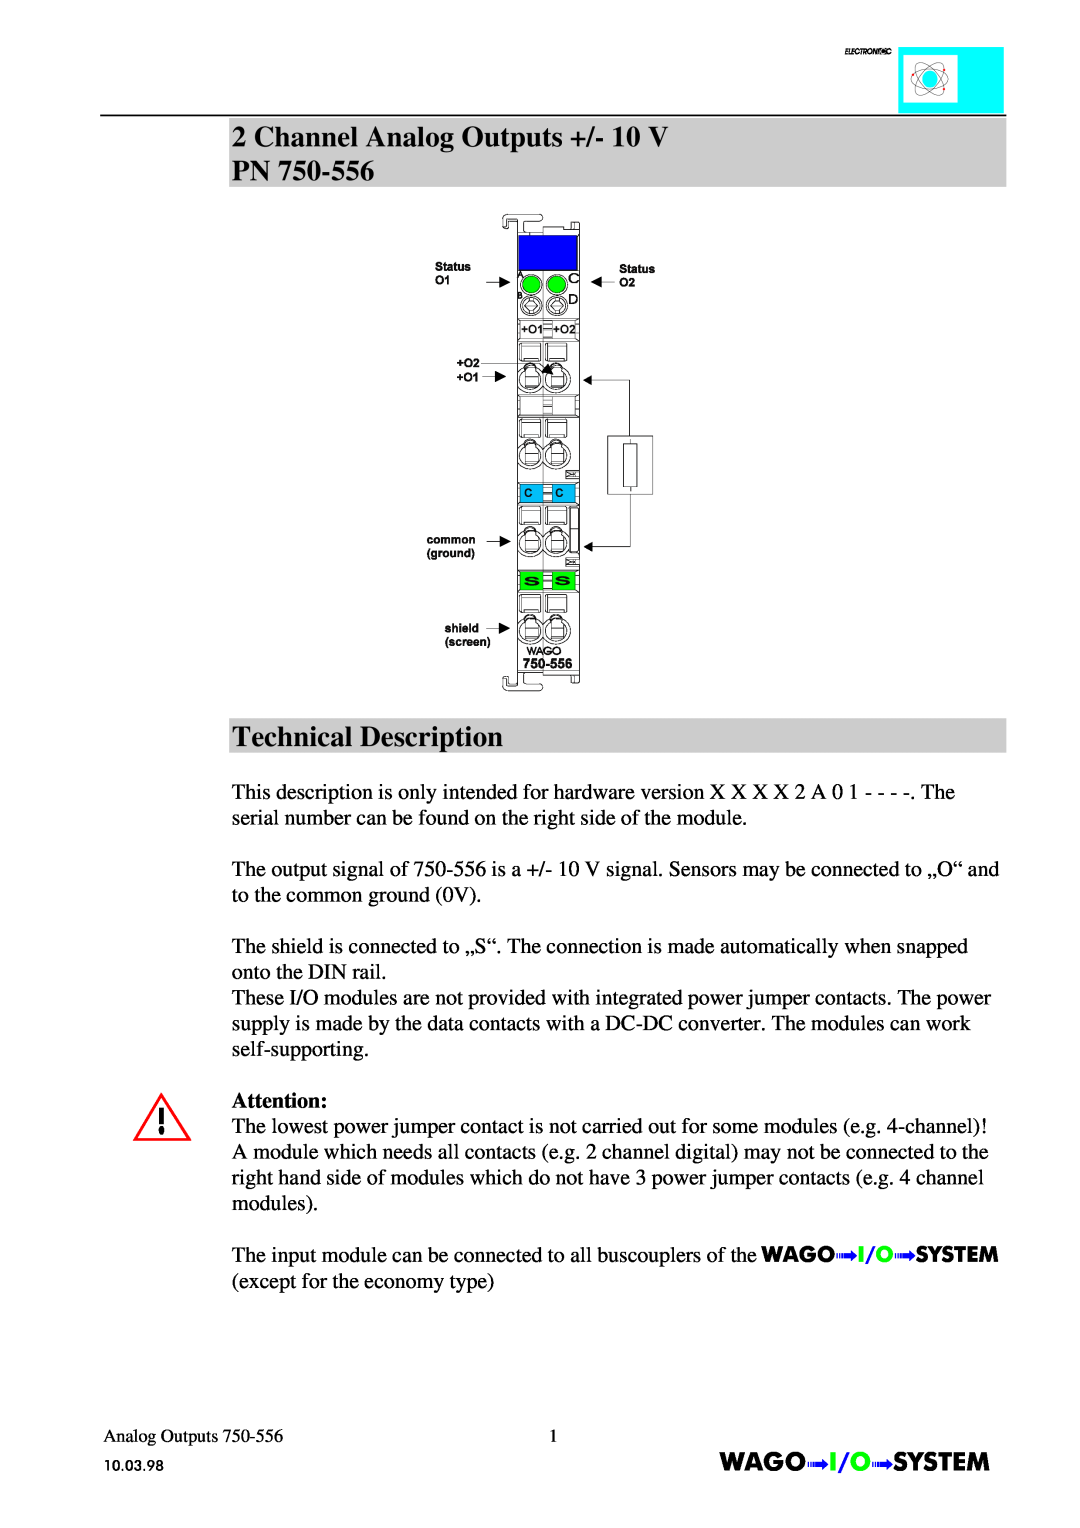 Quatech INTERBUS S manual Channel Analog Outputs +/- 10 V PN Technical Description, AnalogOutputs 